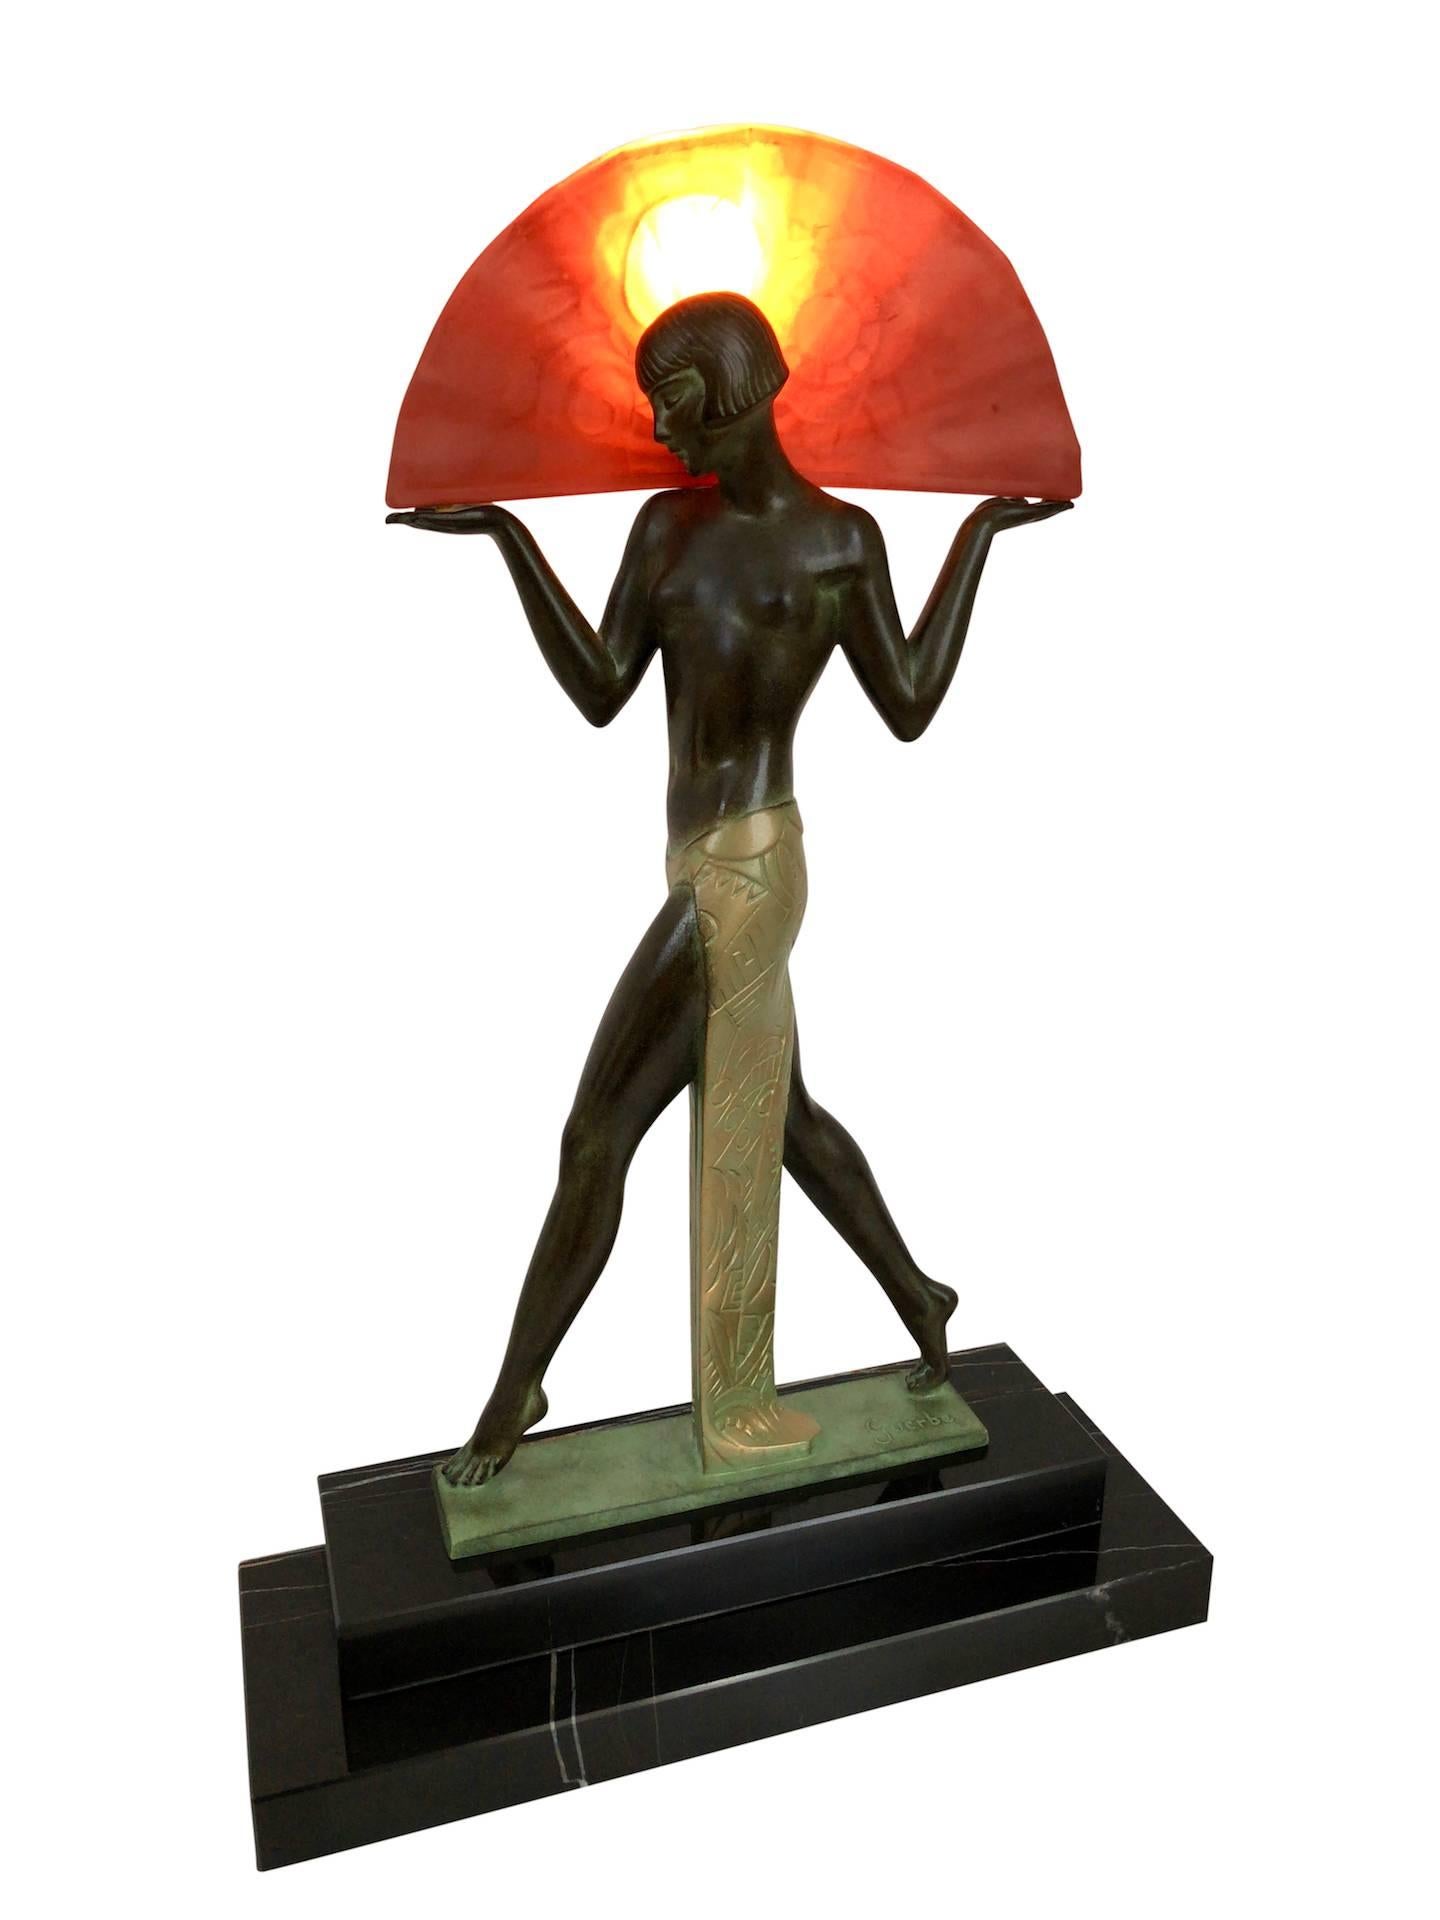 Art Deco Spanish Dancer, Lamp, Sculpture, Espana by Guerbe, Original Max Le Verrier